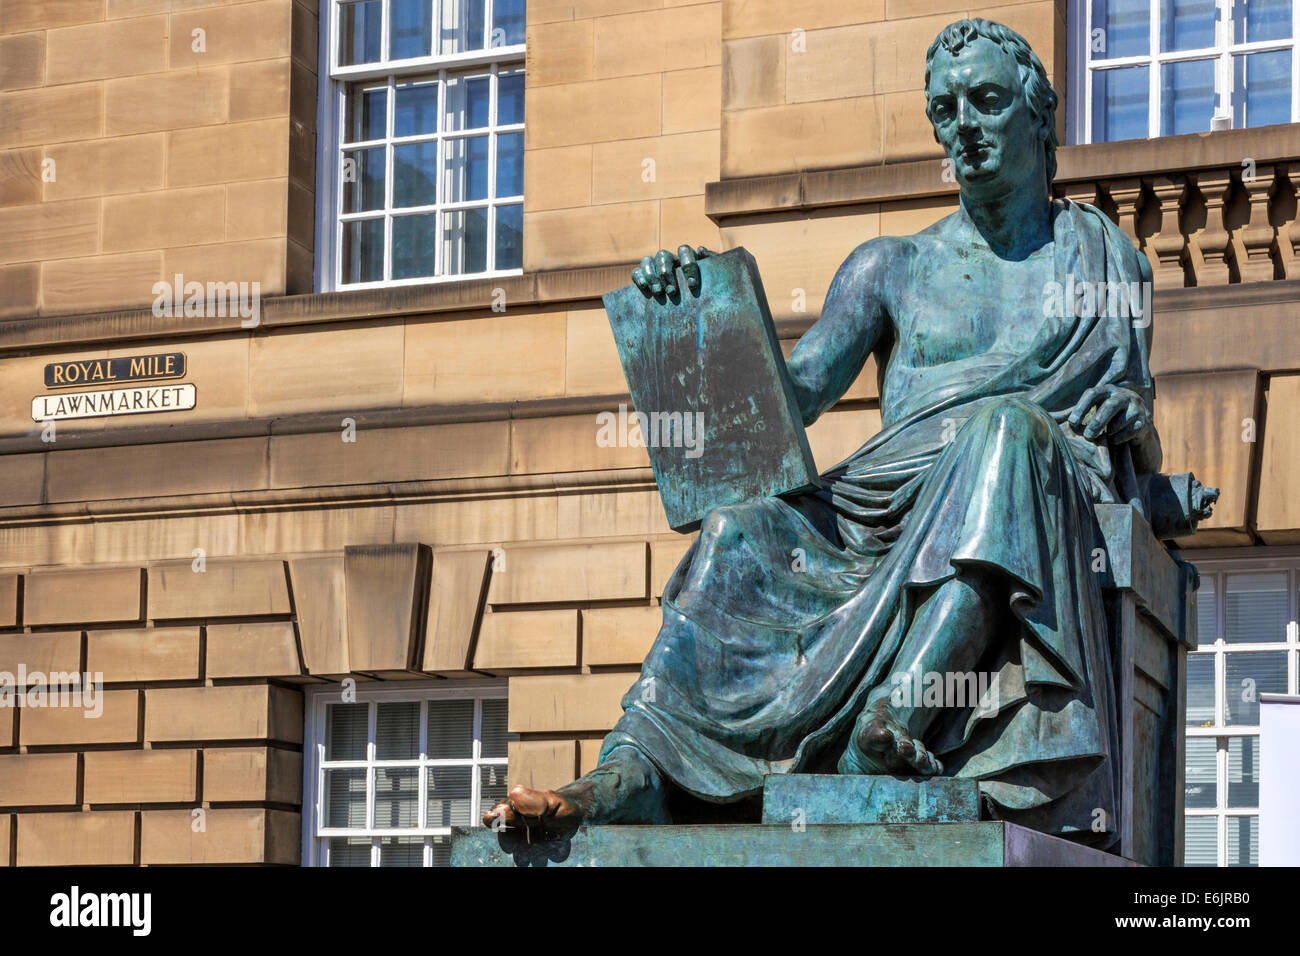 Statue de David Hume, philosophe écossais, né en 1711, décédé en 1776, le Royal Mile, Édimbourg, Écosse, Royaume-Uni Banque D'Images